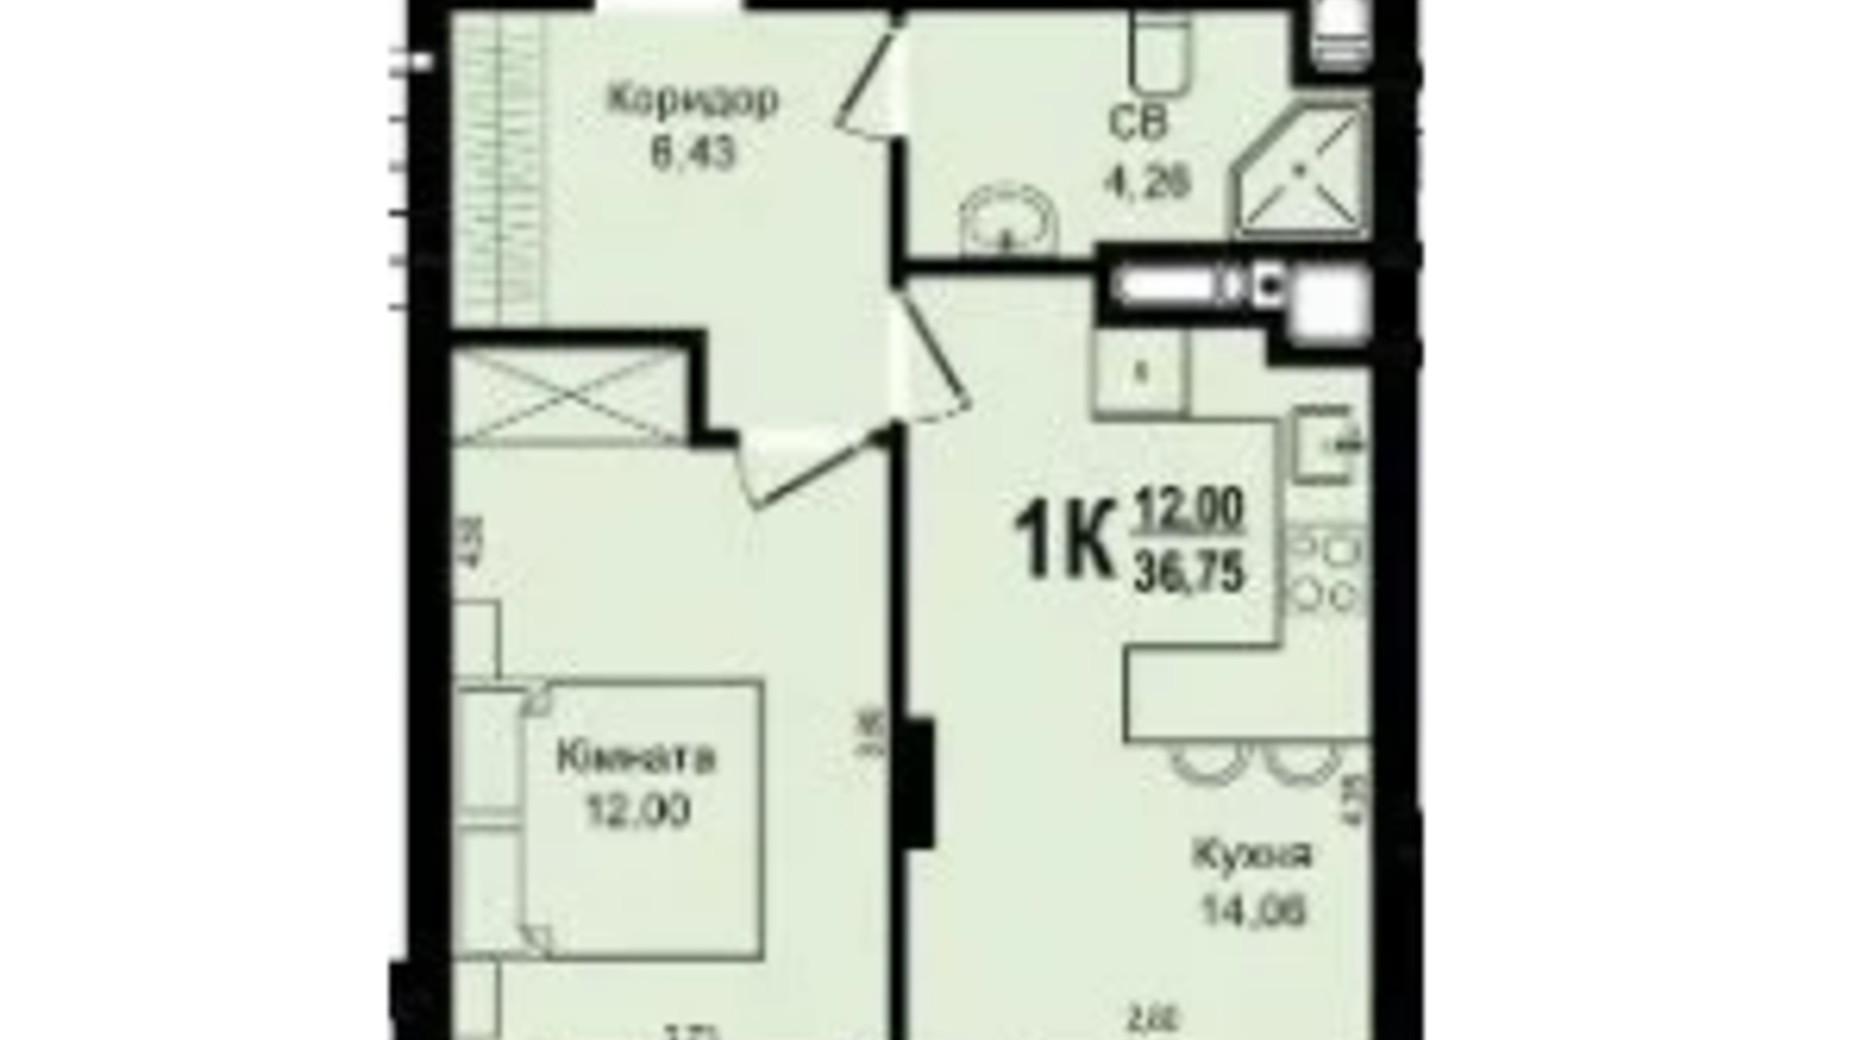 Планировка 1-комнатной квартиры в ЖК Roksolana 36.75 м², фото 669254